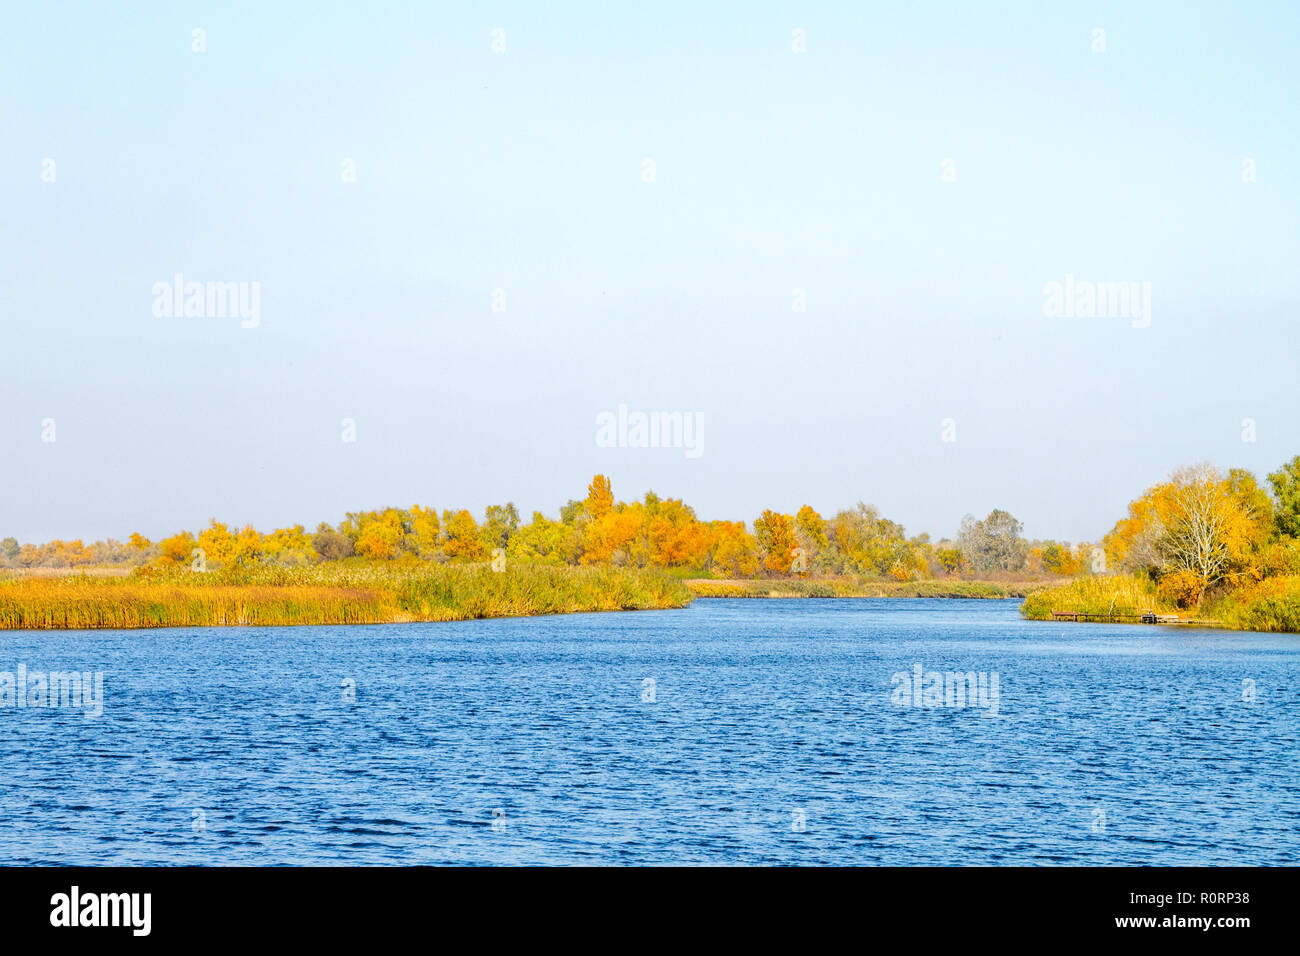 Droit en face de la rivière envahi par les roseaux et arbres en automne Banque D'Images